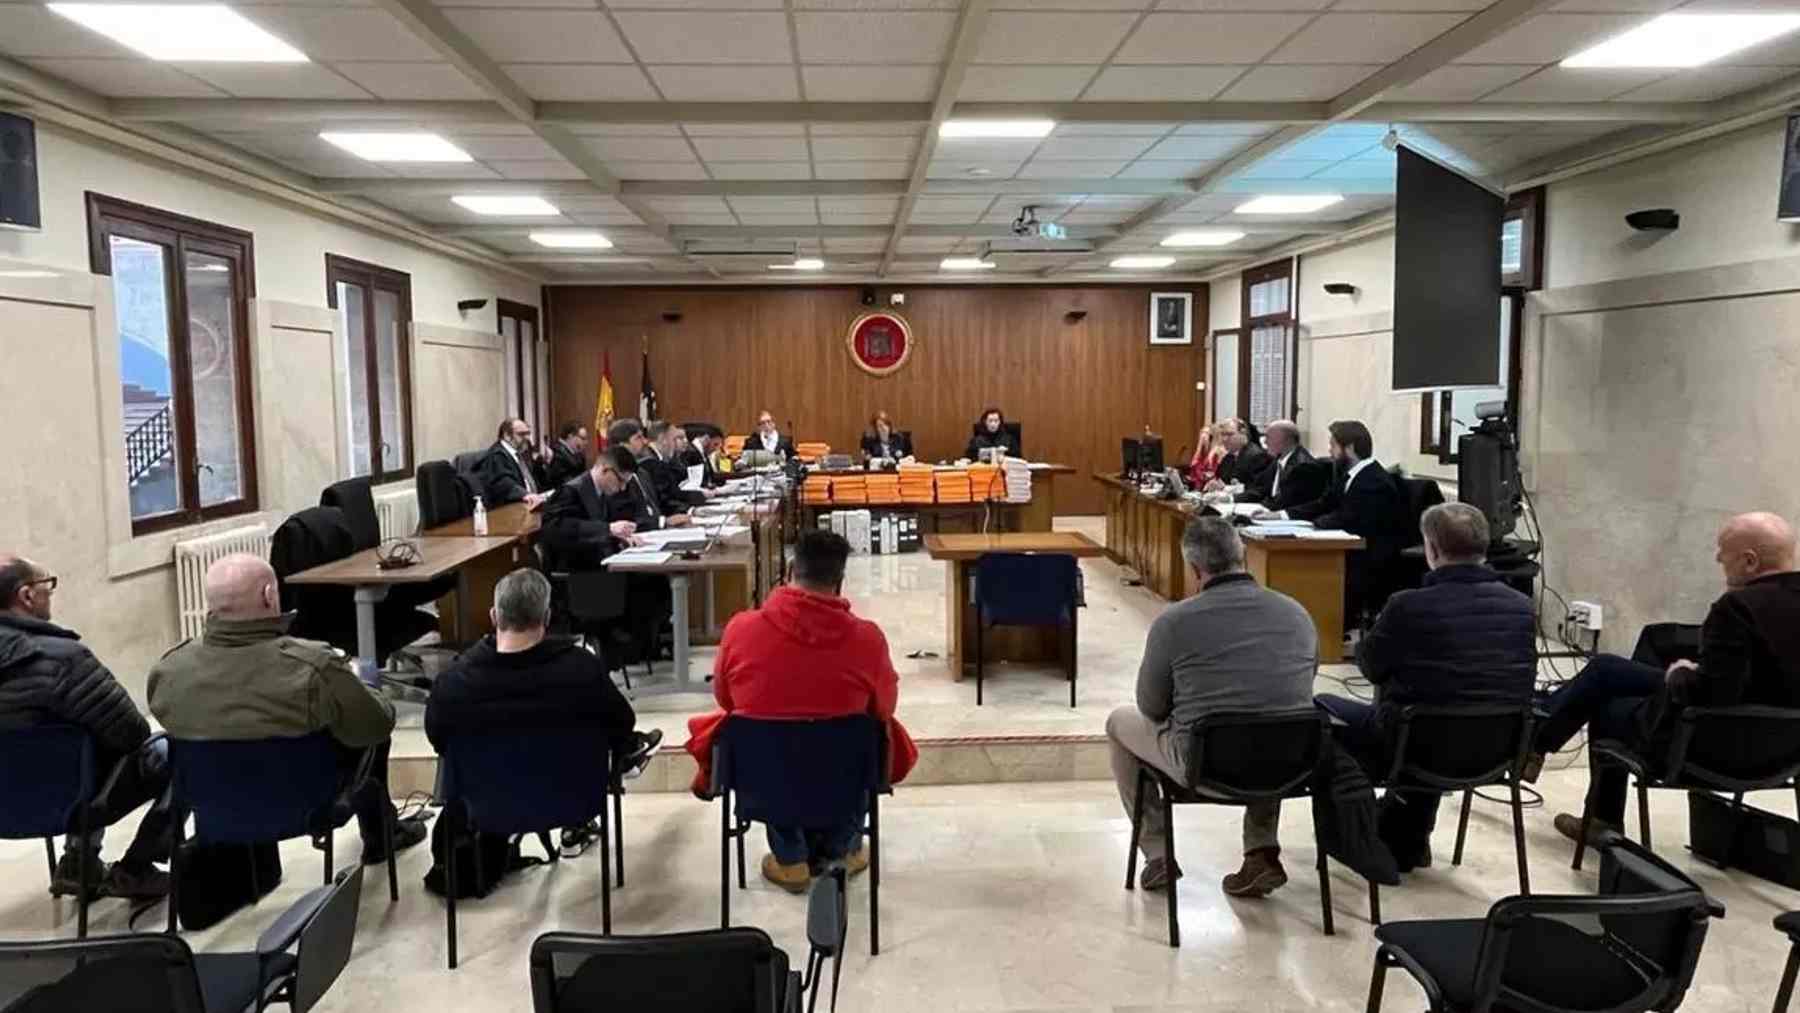 Los acusados por el presunto amaño de exámenes en la Policía Local de Palma.